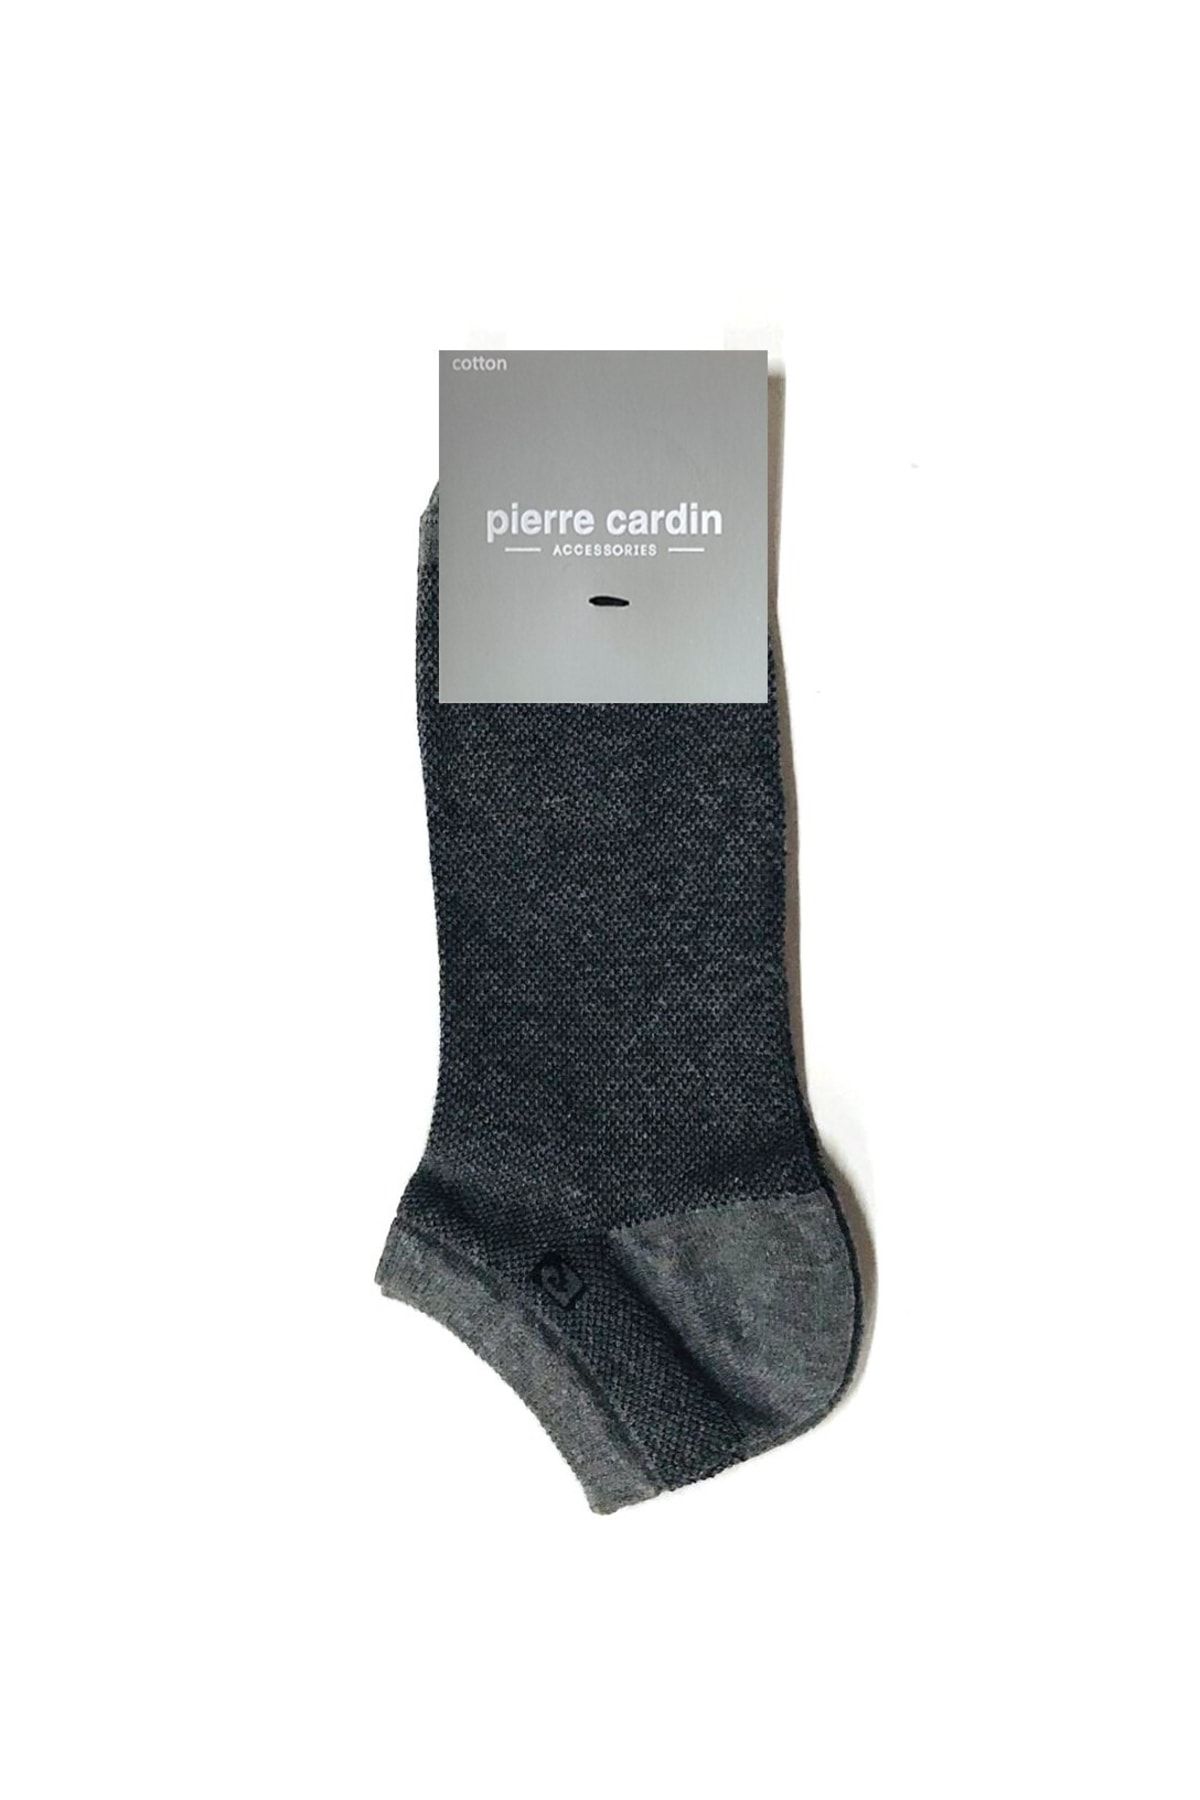 Pierre Cardin Lens Pamuk Erkek Patik Çorap Gri